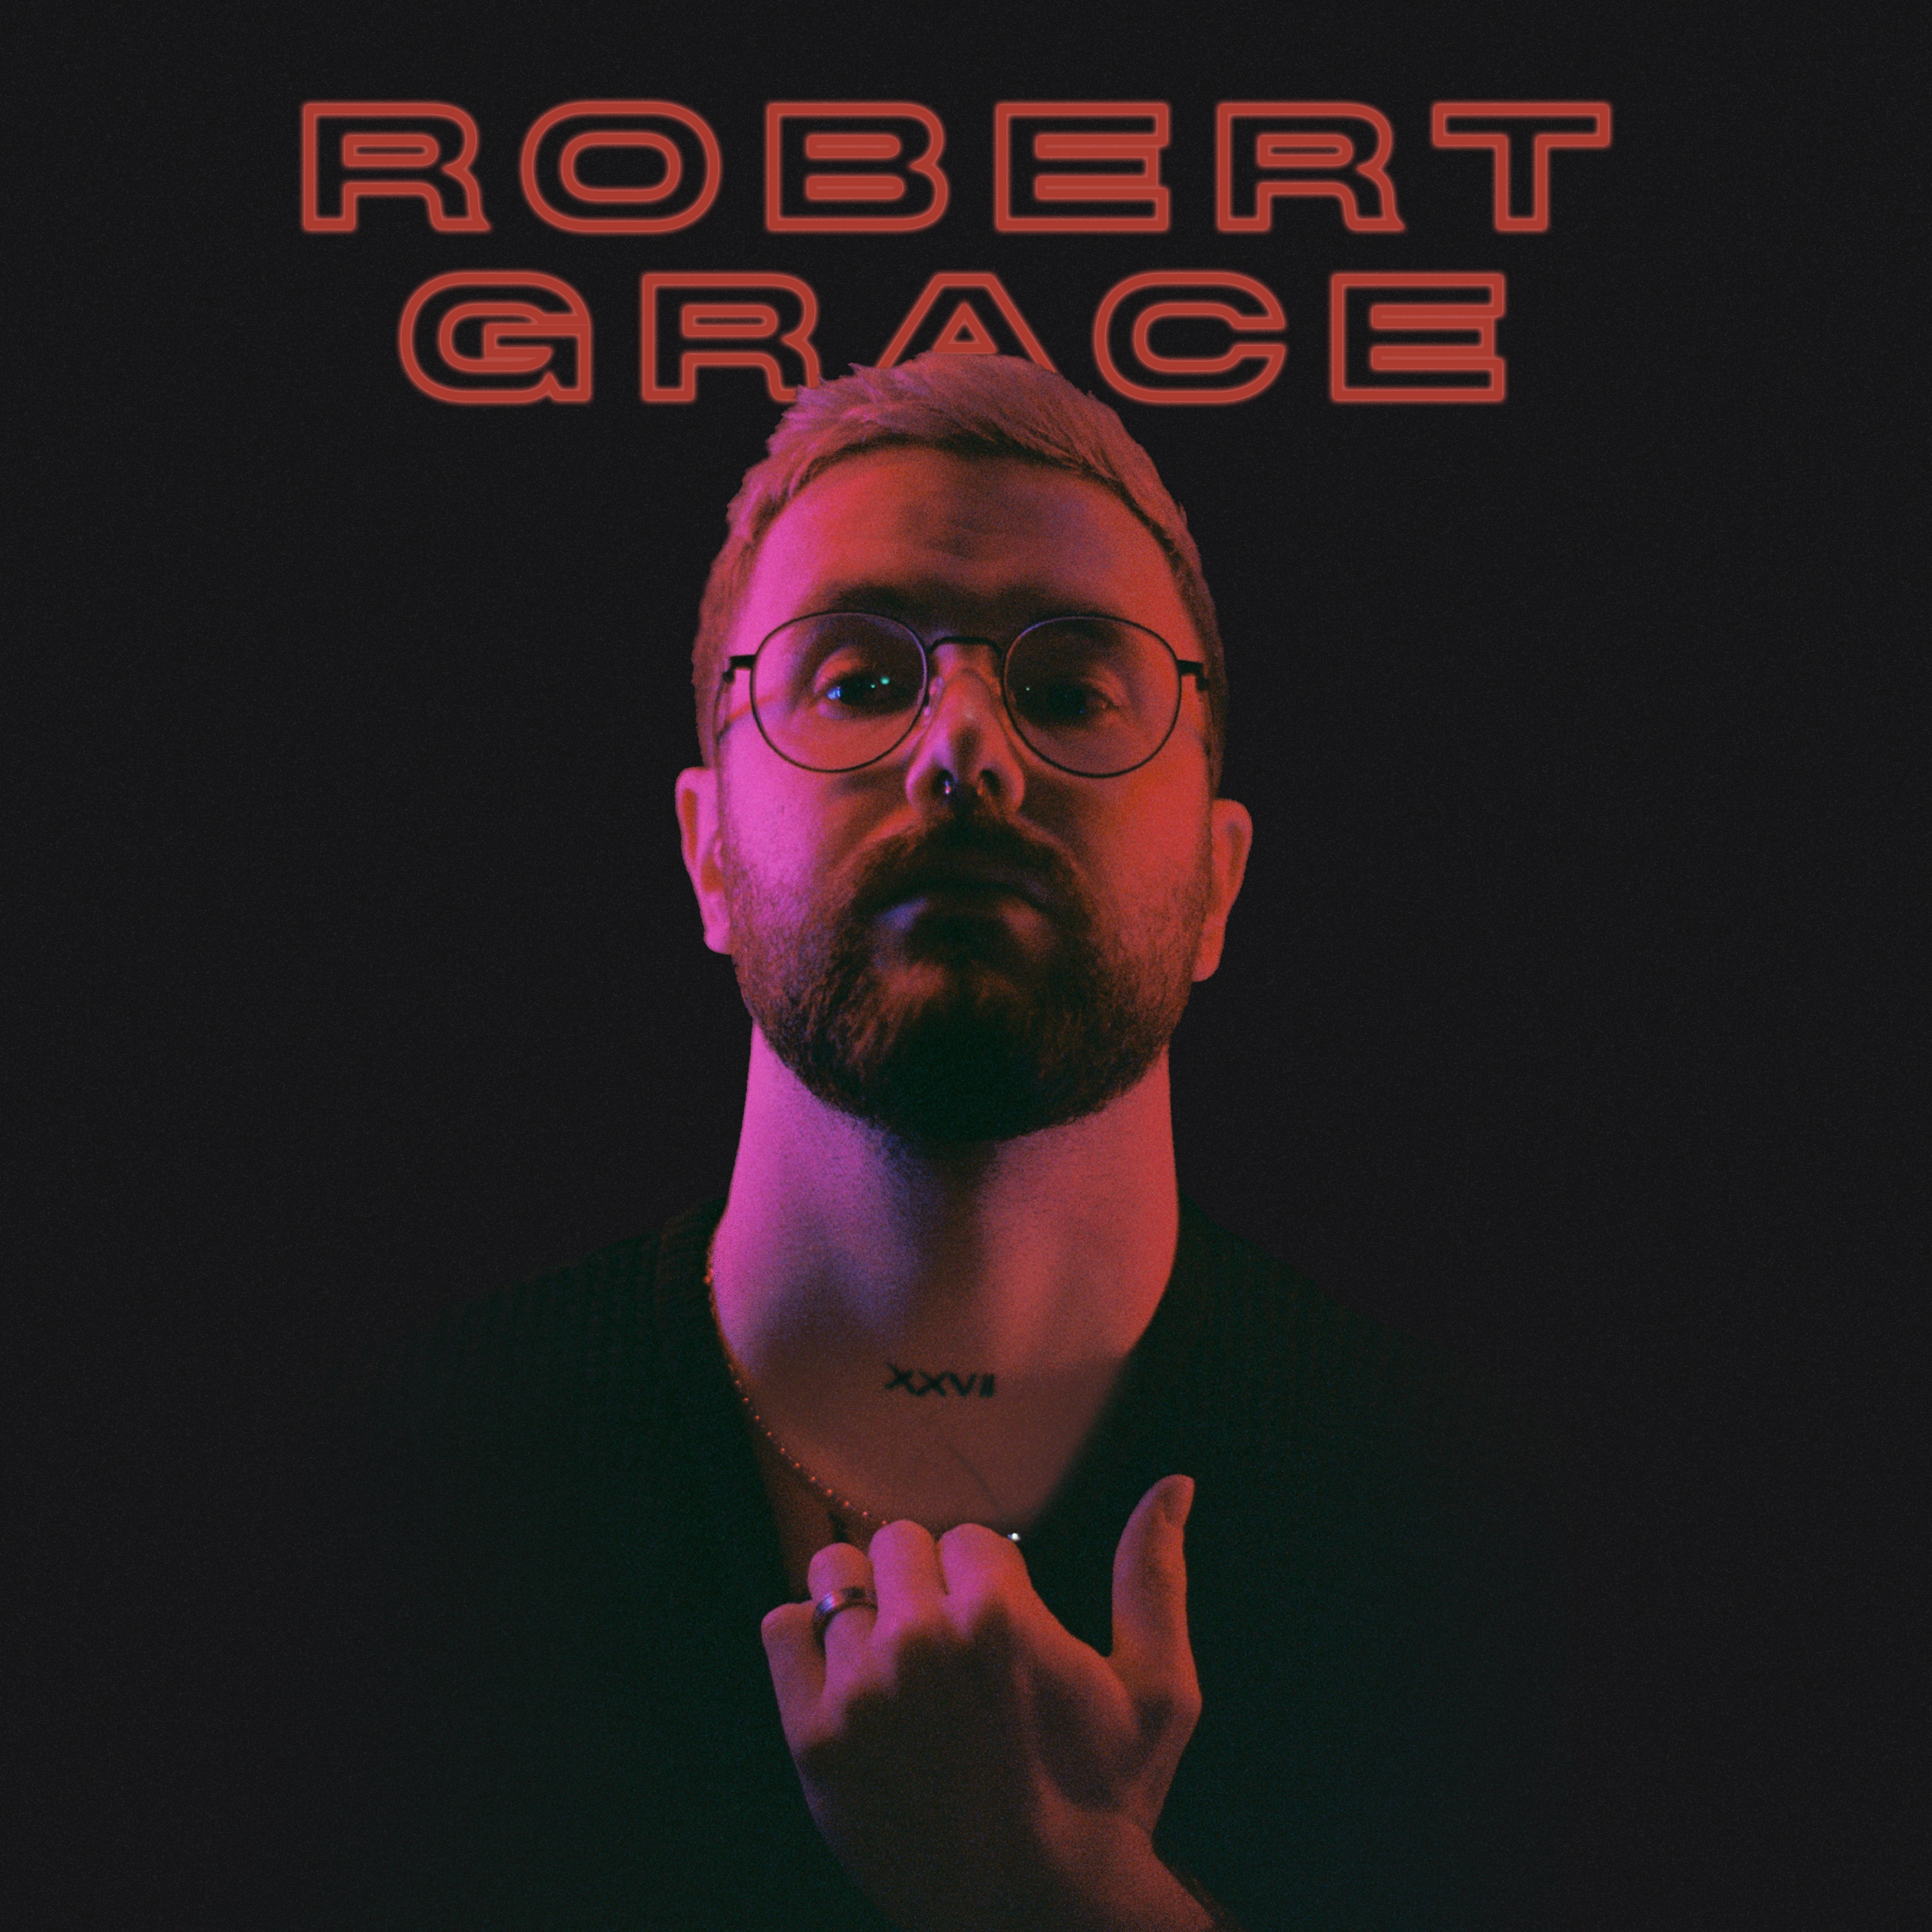 Robert-grace-XXVII-cover-FINAL